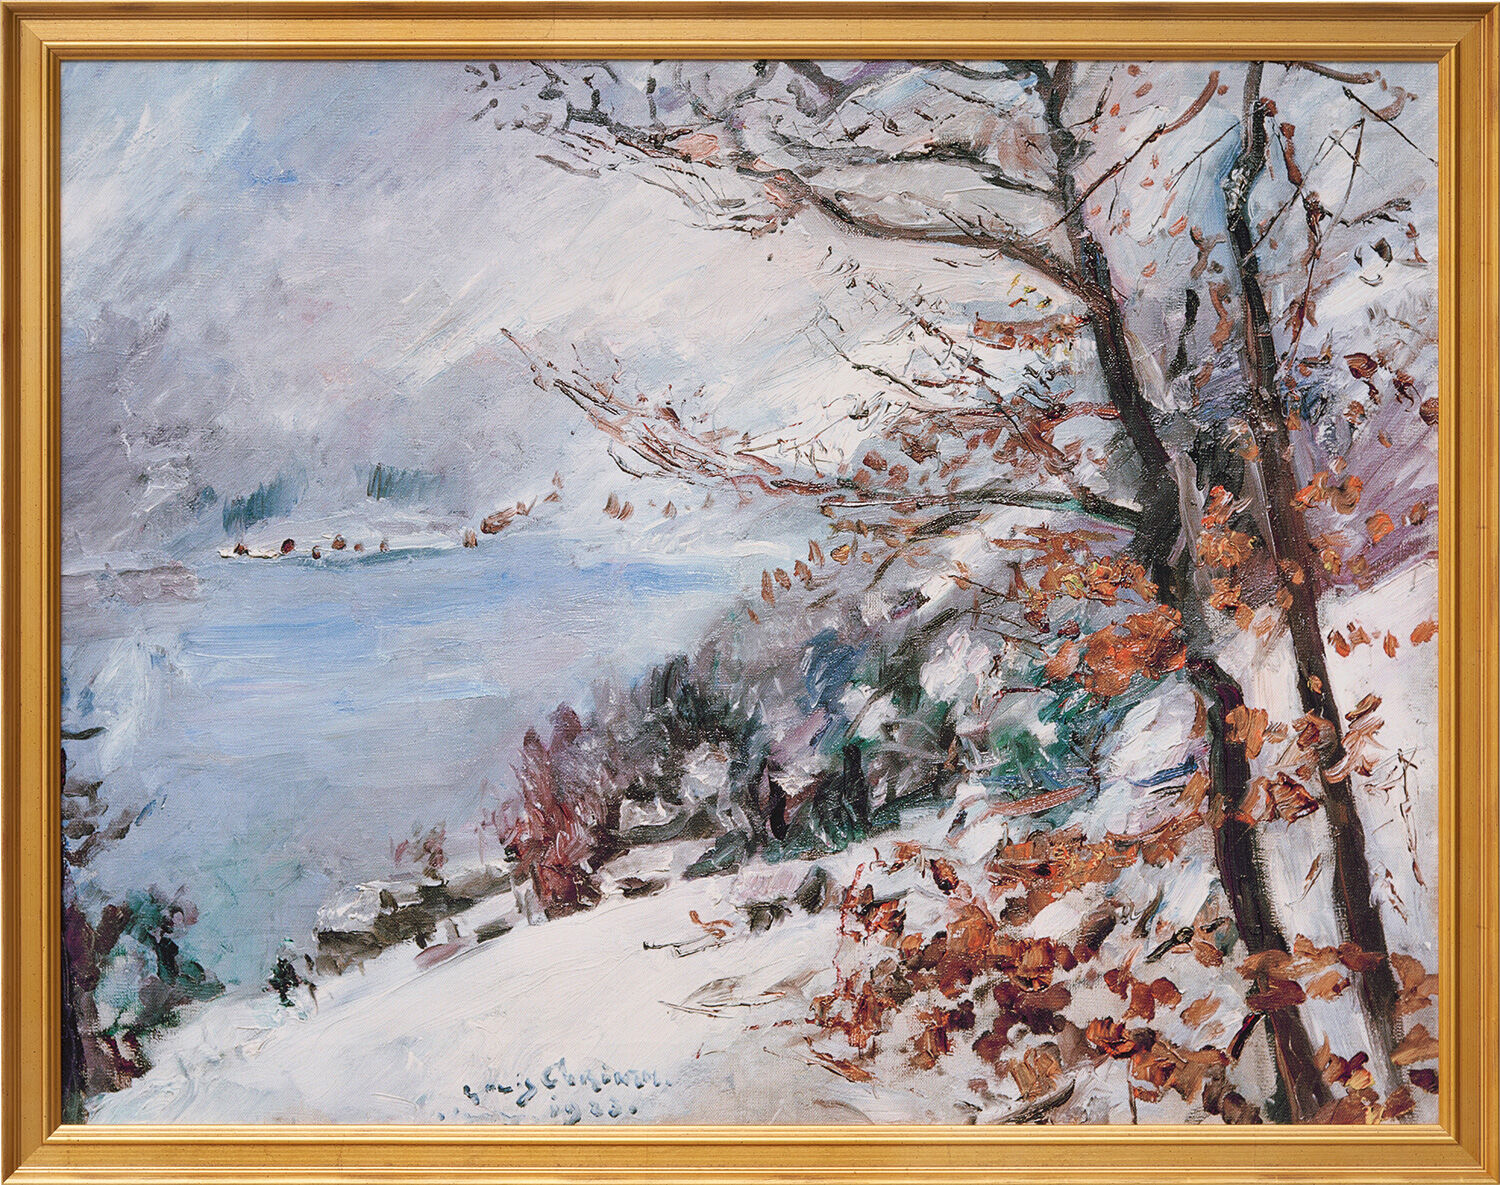 Billede "Walchensee in Winter" (1923), gylden indrammet version von Lovis Corinth